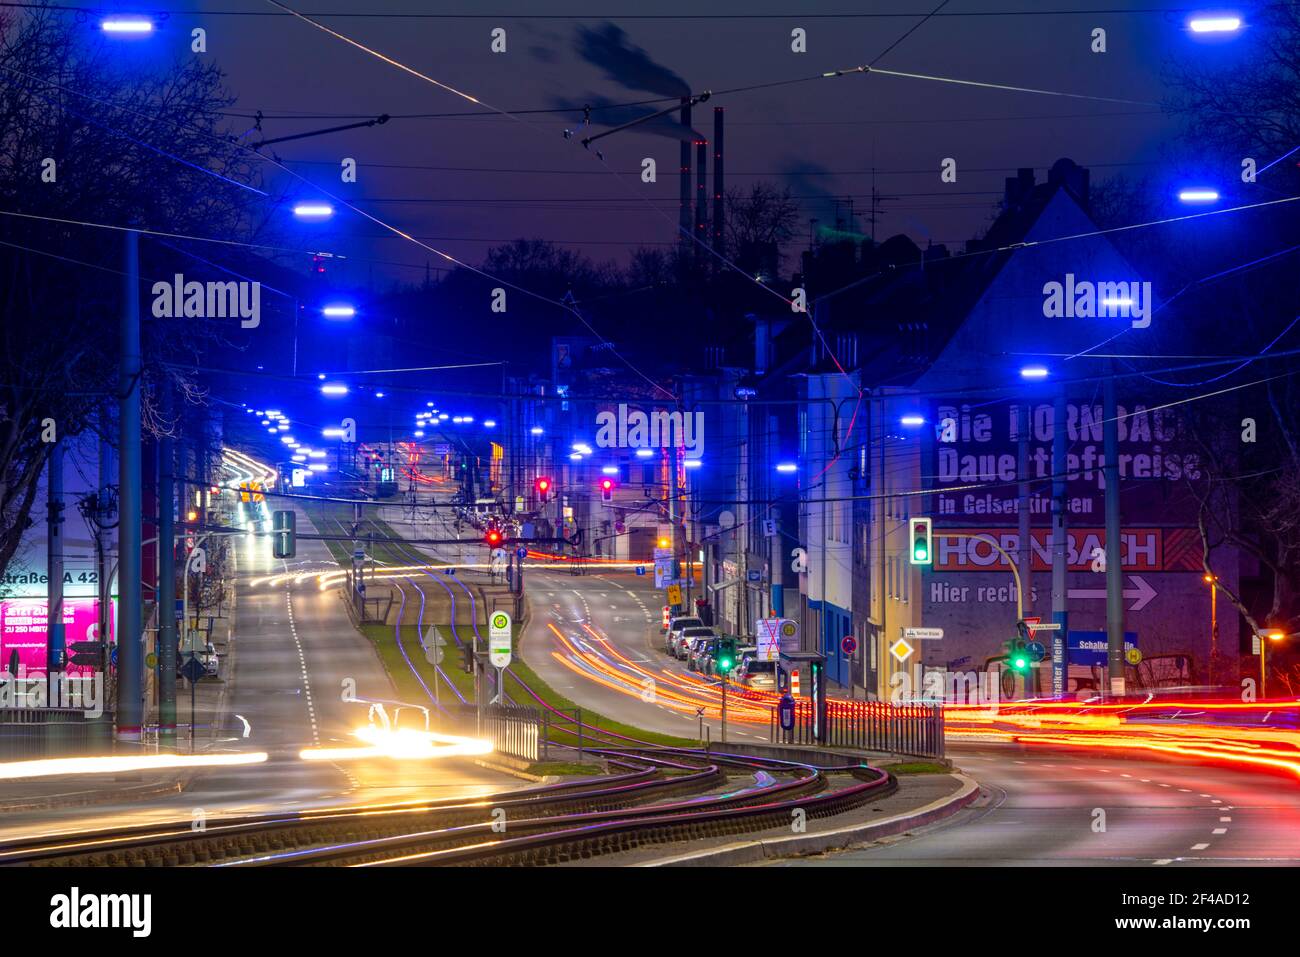 Le ruban bleu, une installation légère le long de Kurt-Schumacher-Strasse, à Gelsenkirchen Schalke, 2.7 KM de long, organisée par la Fondation Schalker Markt Banque D'Images